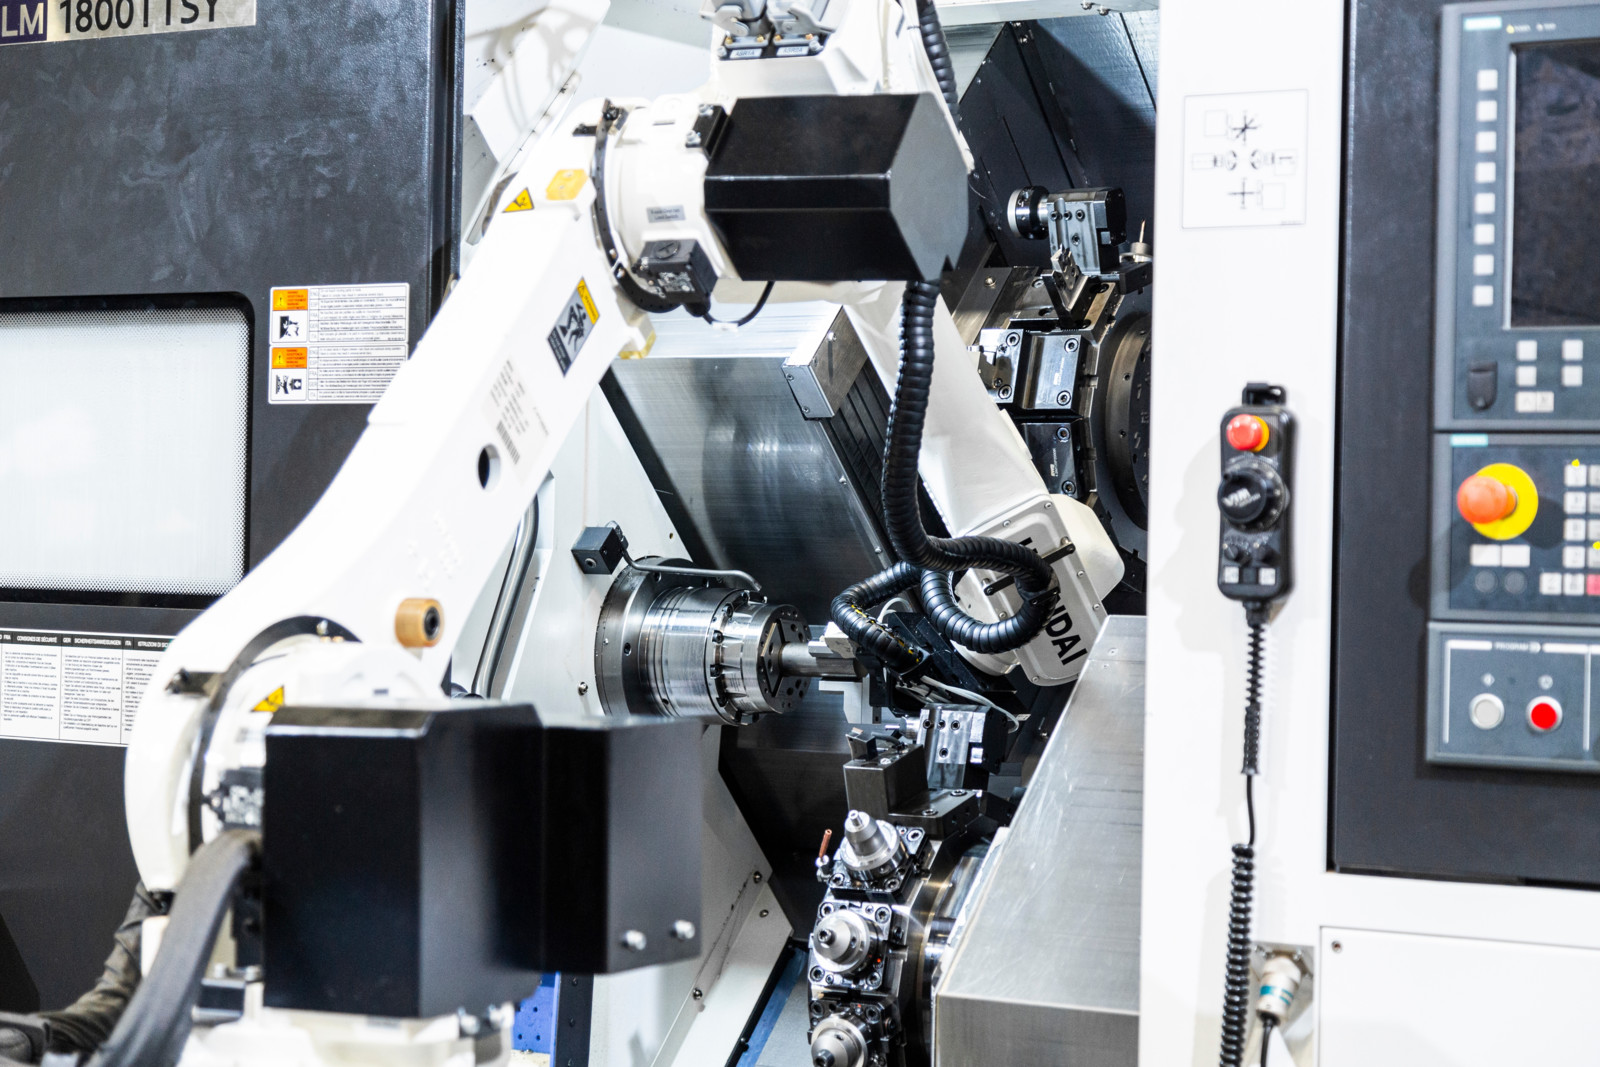 Anbindung eines 6-Achs-Roboters an das Mehrachsen-Drehzentrum Hyundai WIA LM1800TTSY. 